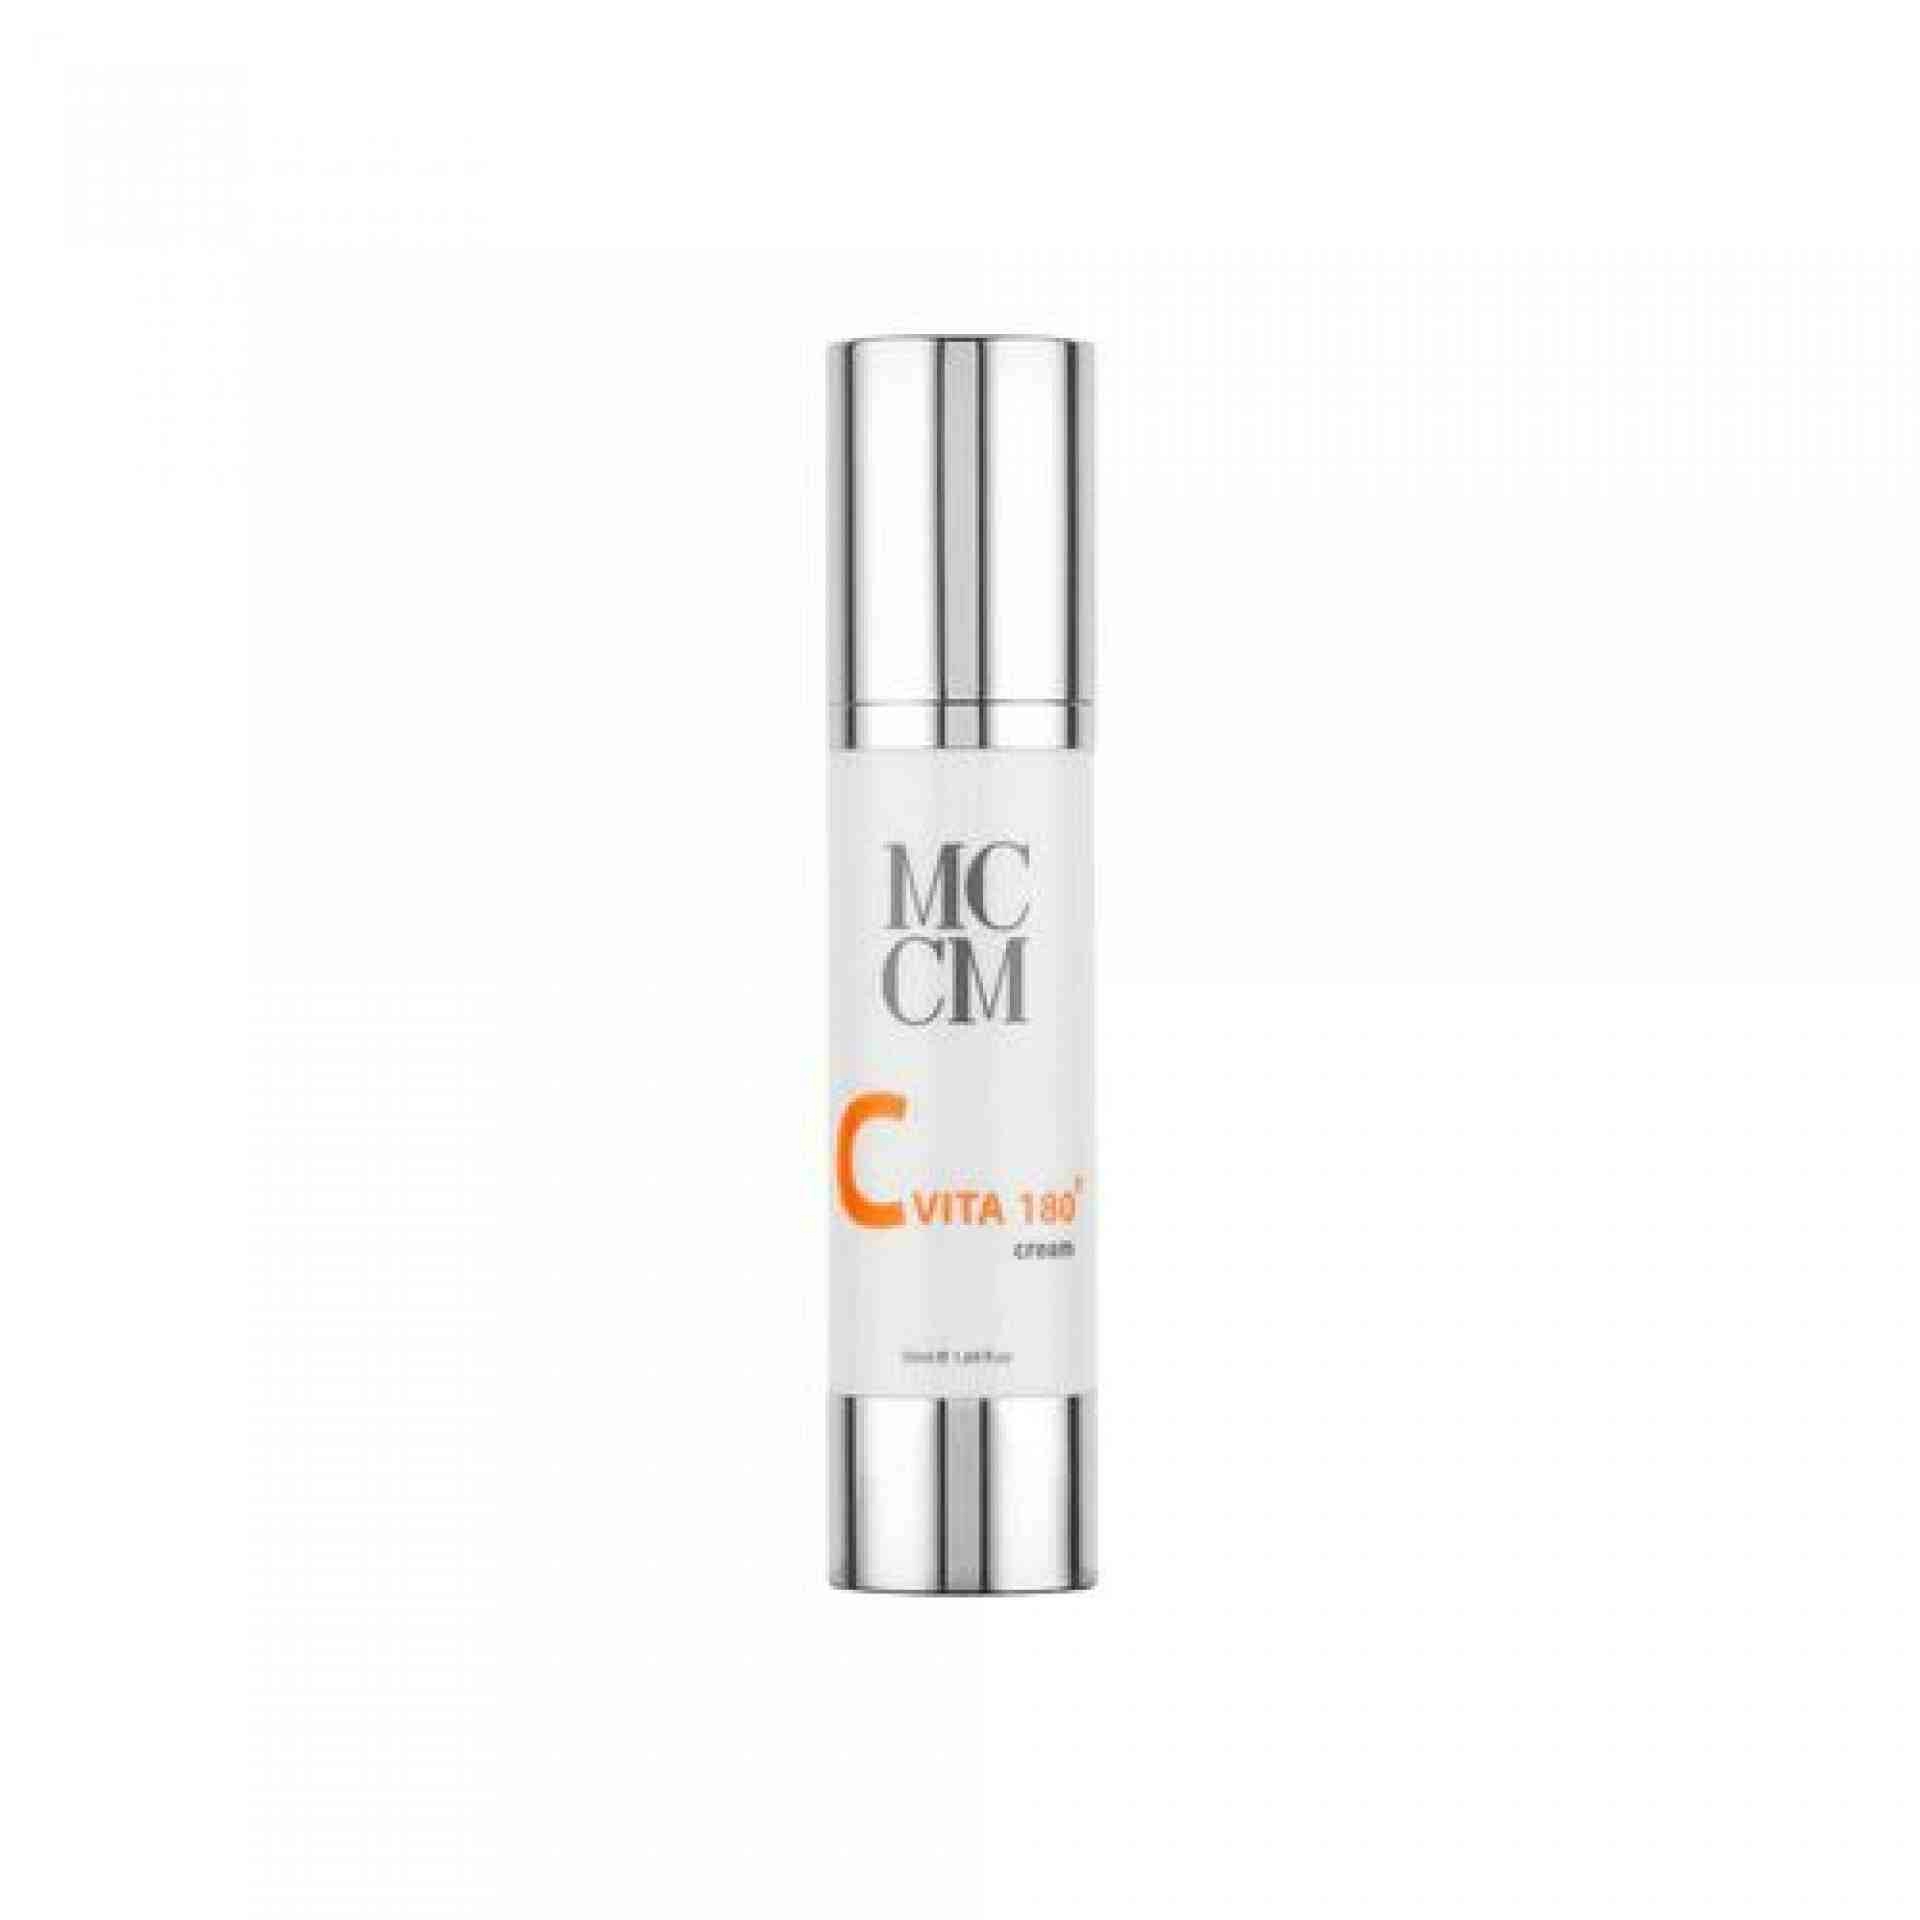 C Vita 180º Cream | Crema facial antimanchas 50 ml - Línea Facial - MCCM ®